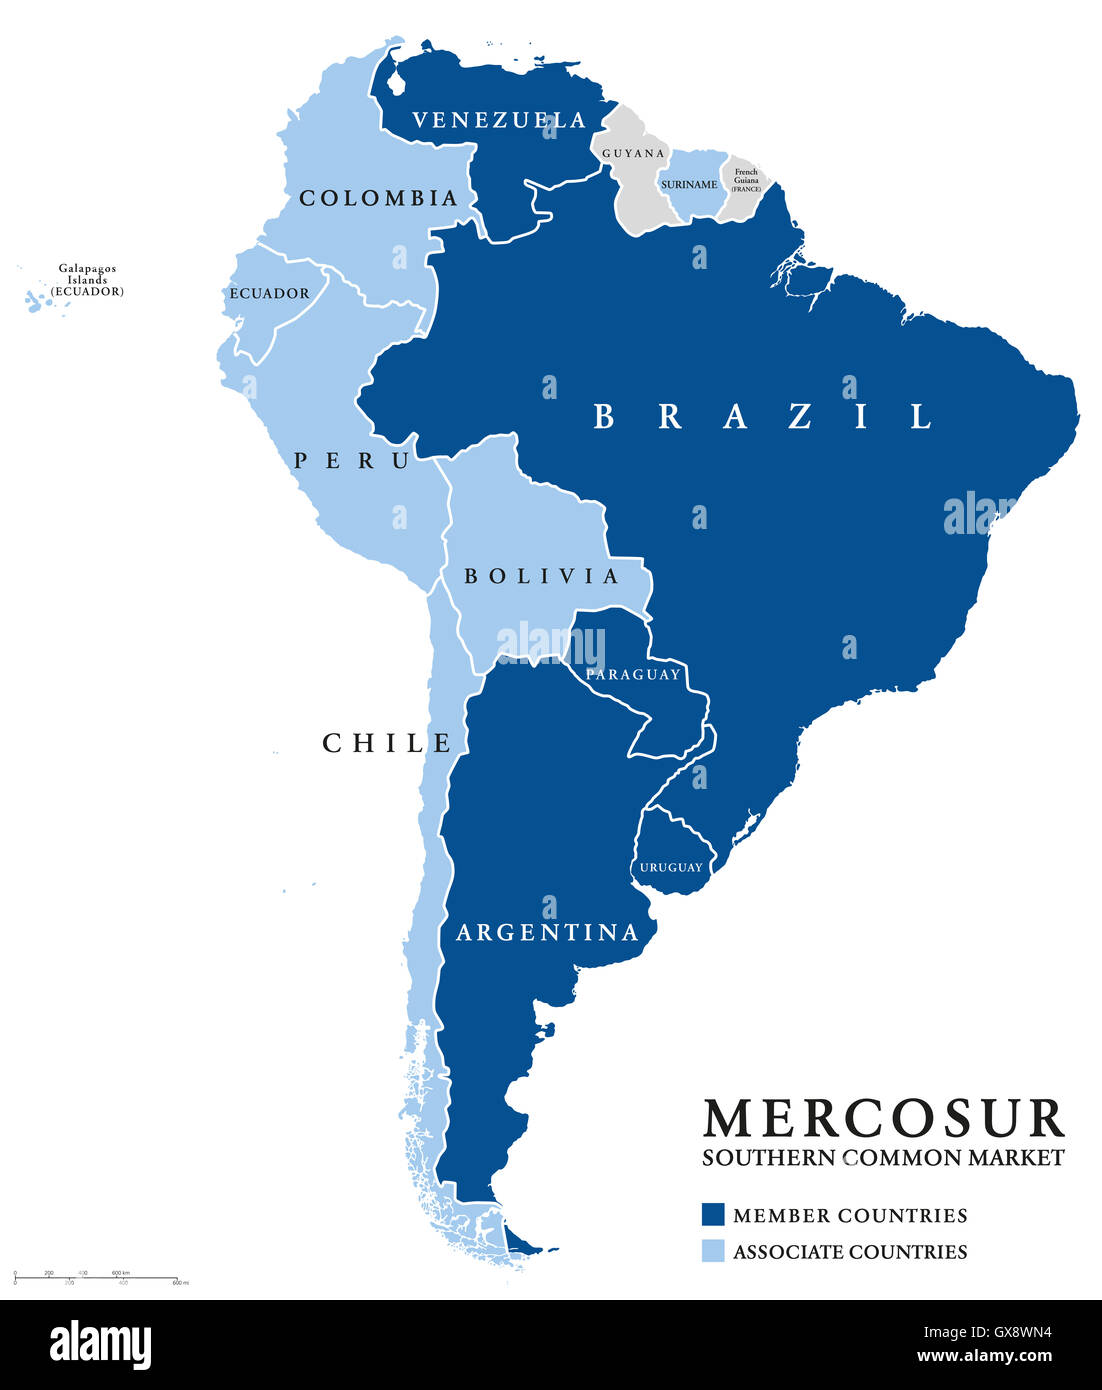 Gemeinsamen Markt des Südens MERCOSUR Länder-Info-Karte, auch Mercosul. Freihandel Bloc. Stockfoto